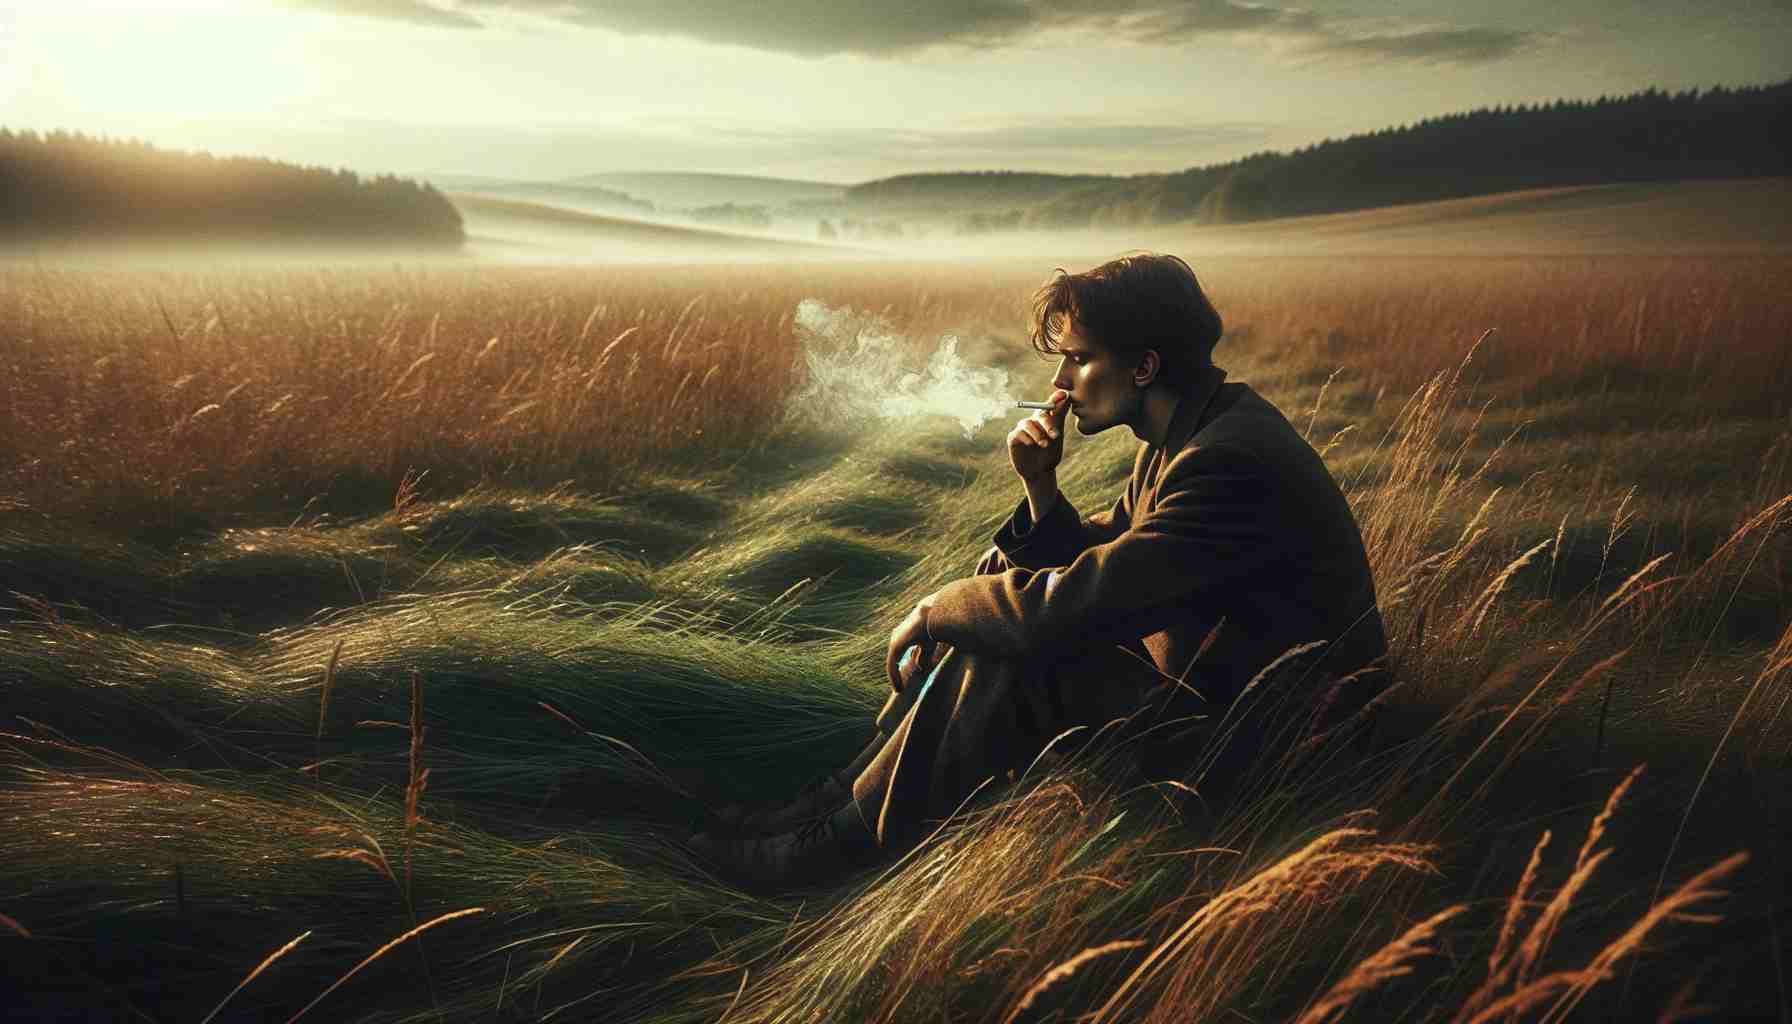 egy realisztikus, szélesvásznú kép egy személyről, aki egyedül cigarettázik egy nyílt mezőn. A jelenetnek meg kell örökítenie az egyént egy szemlélődő